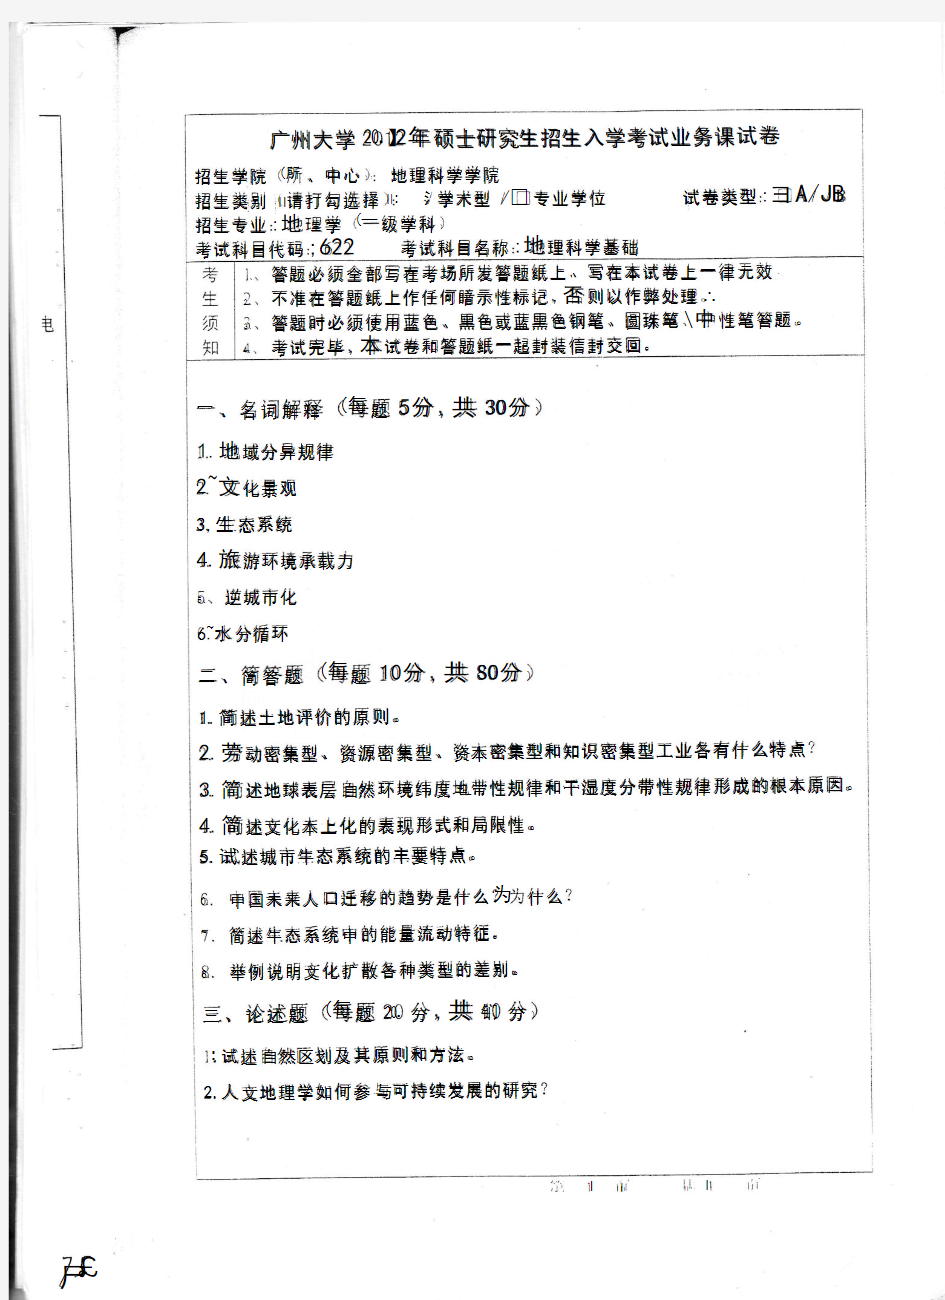 广州大学考研历年真题之611地理科学基础2012--2014(学硕)年考研真题